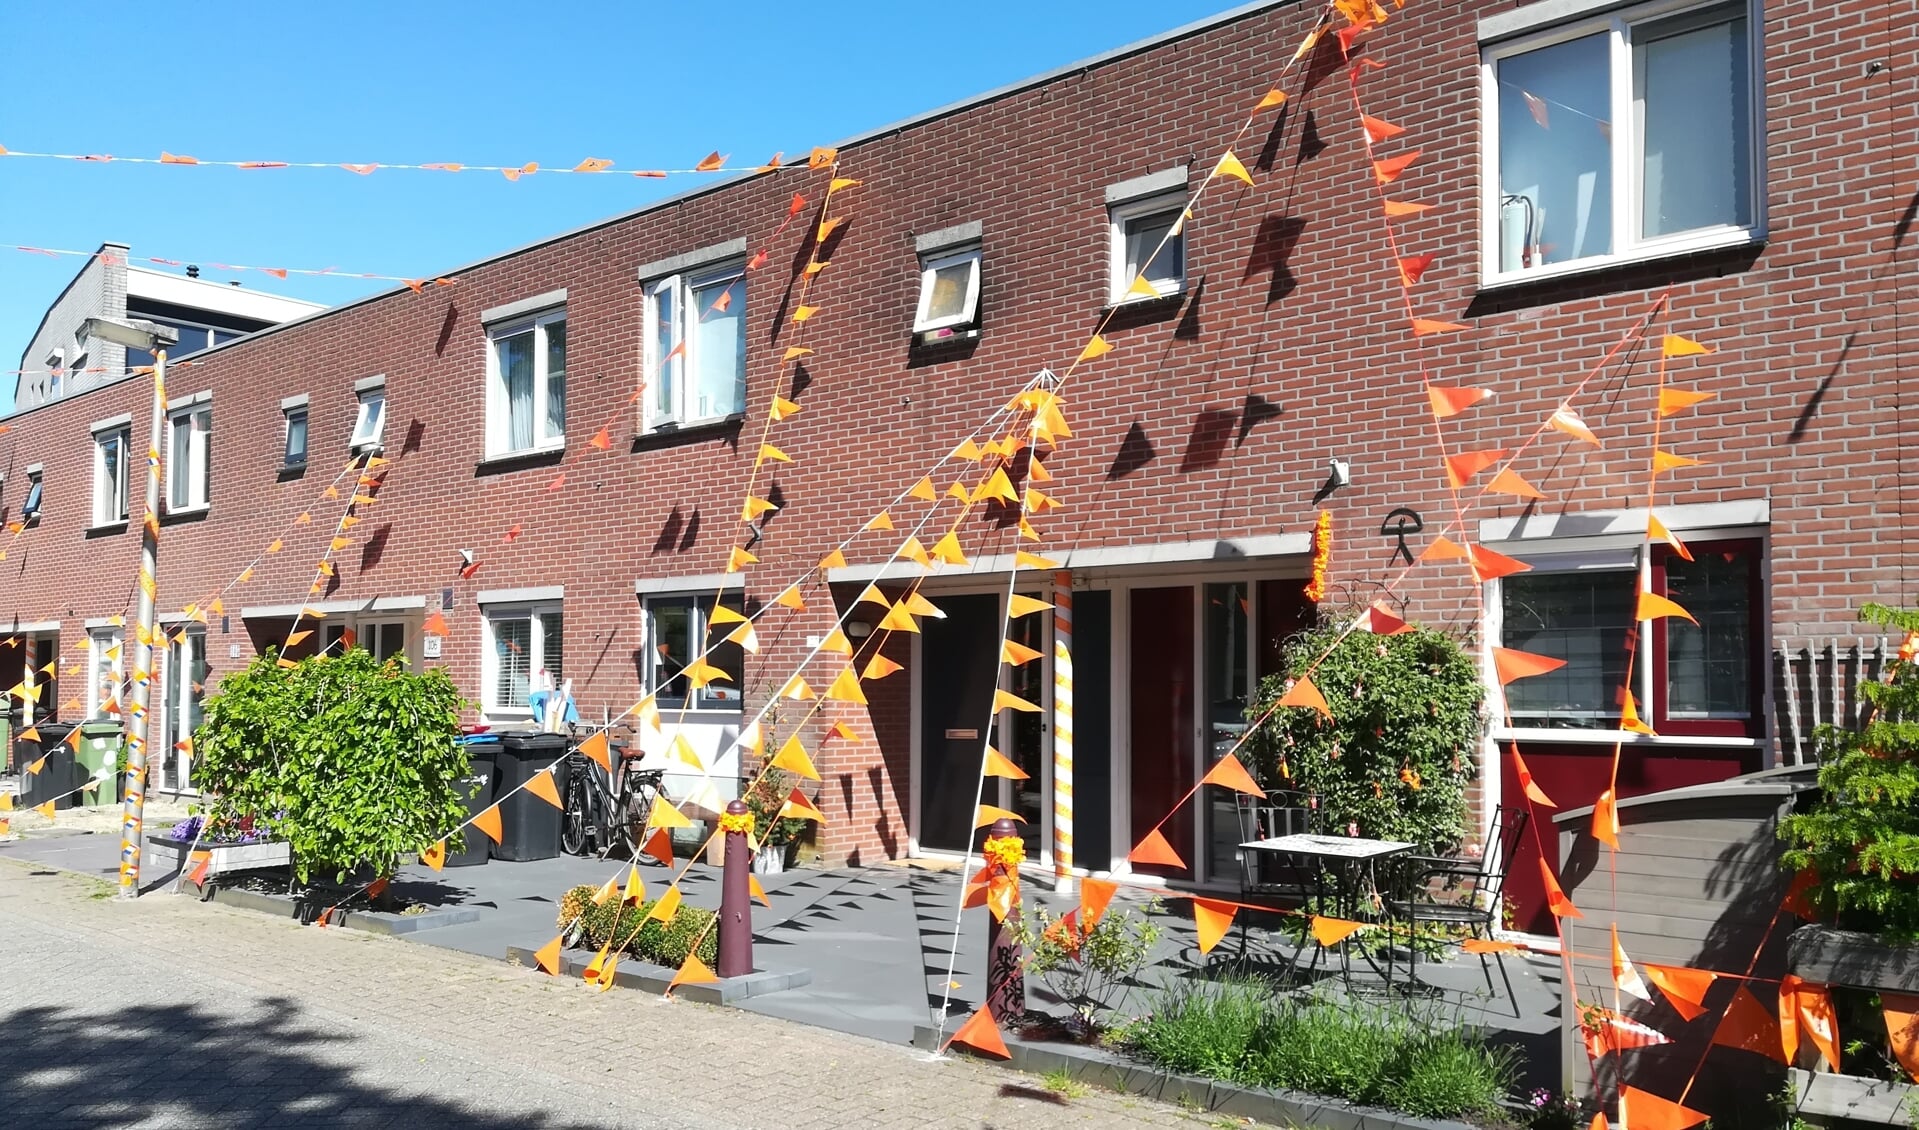 Je ziet steeds meer huizen en straten oranje kleuren. Zoals hier in Tuinstee in Purmerend.